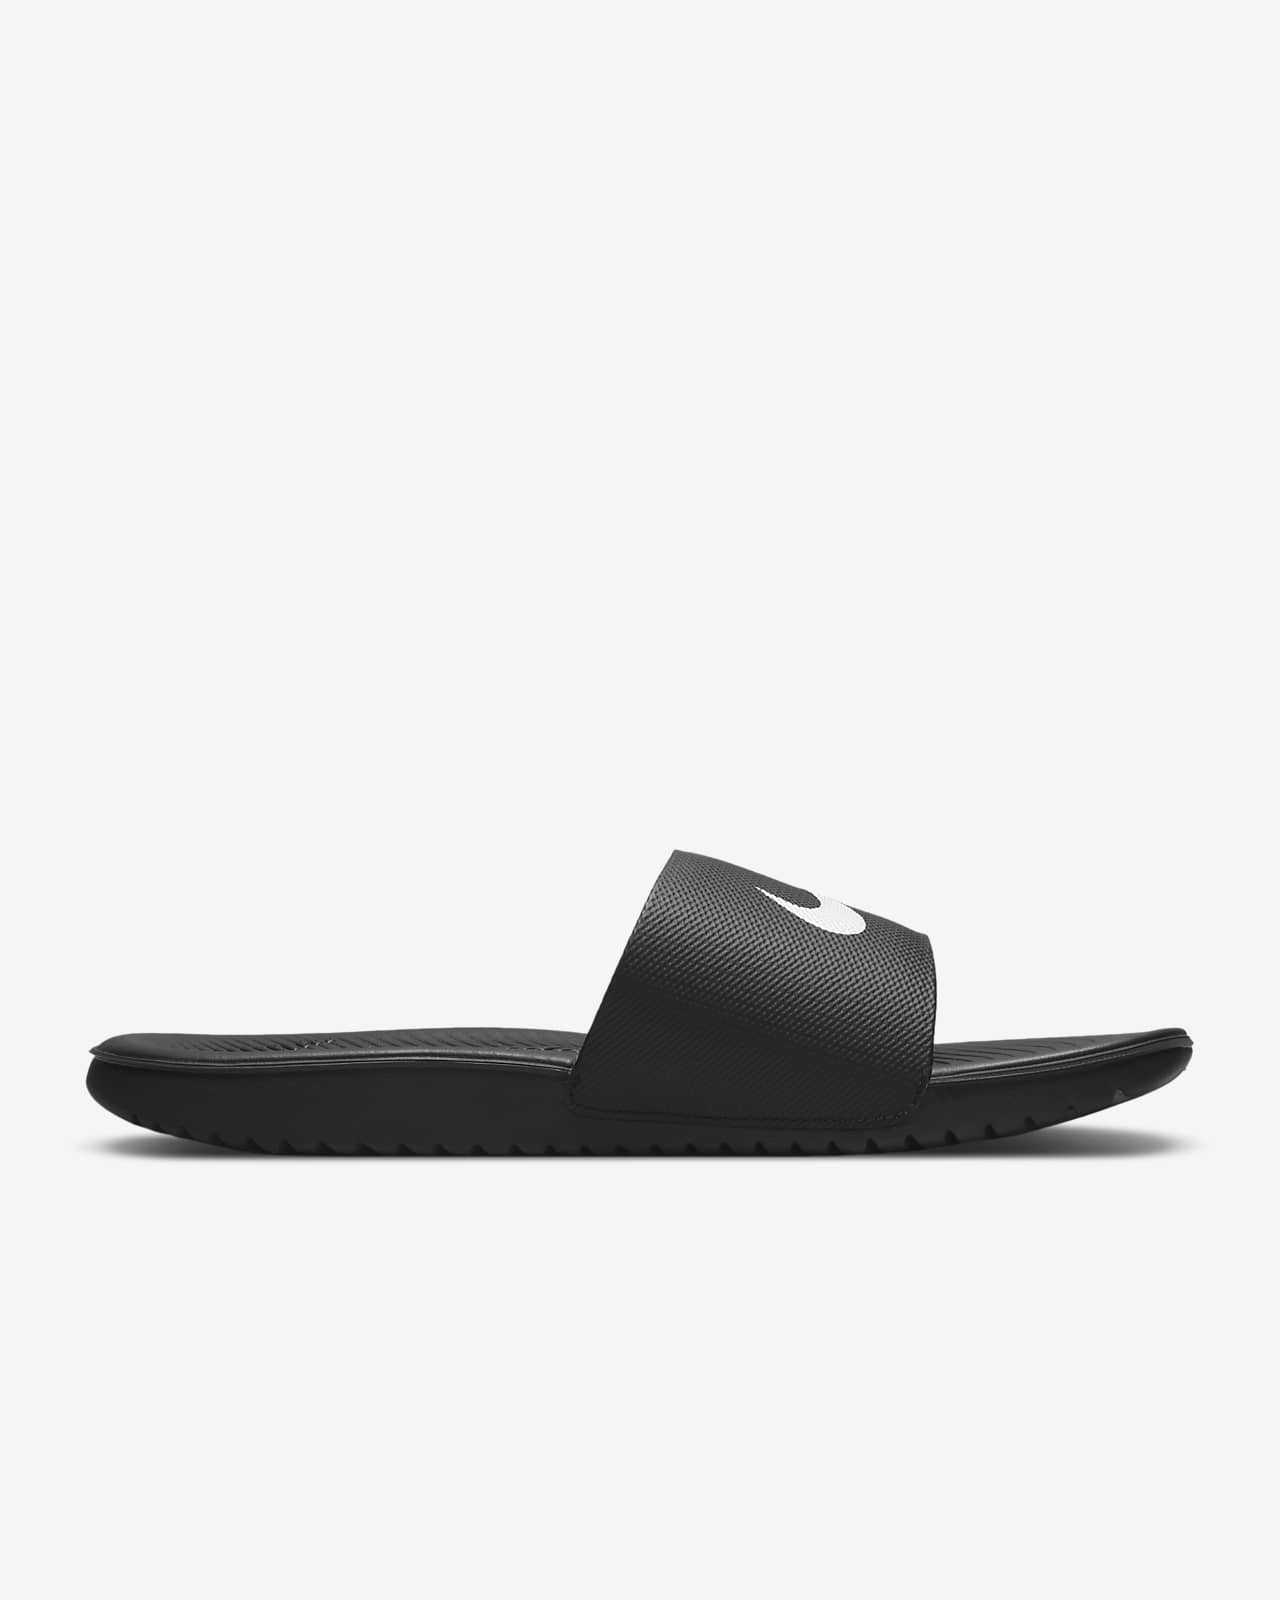 nike men's kawa shower slide sandals